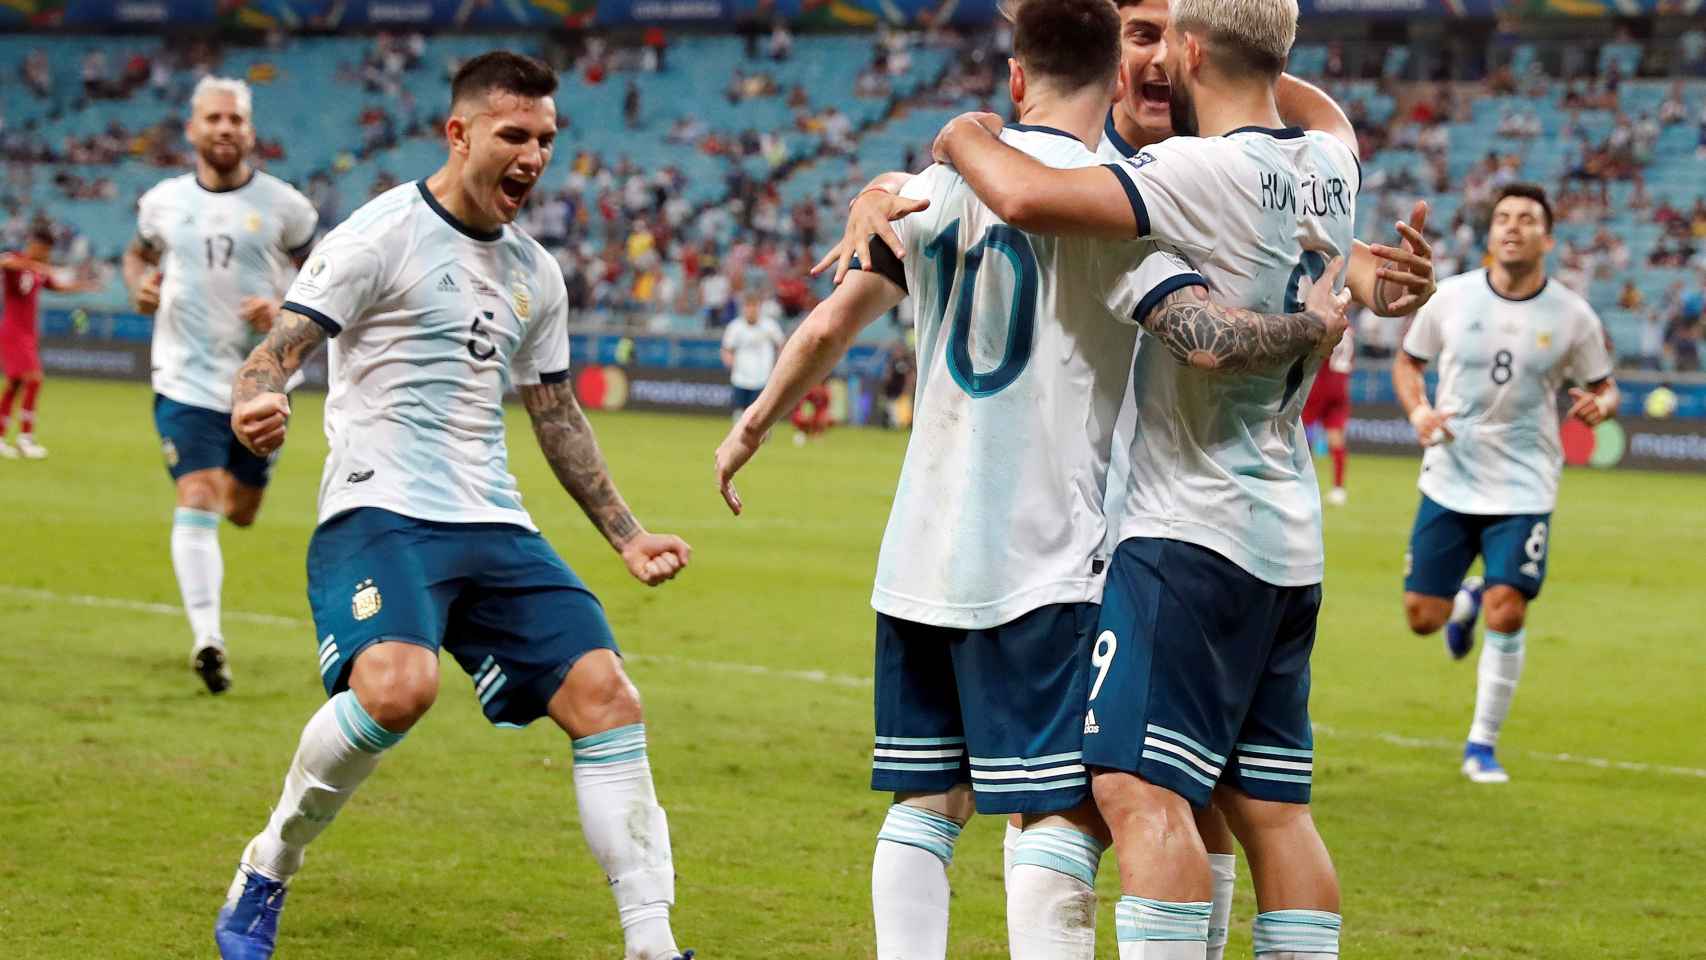 Los jugadores de Argentina celebran un gol.